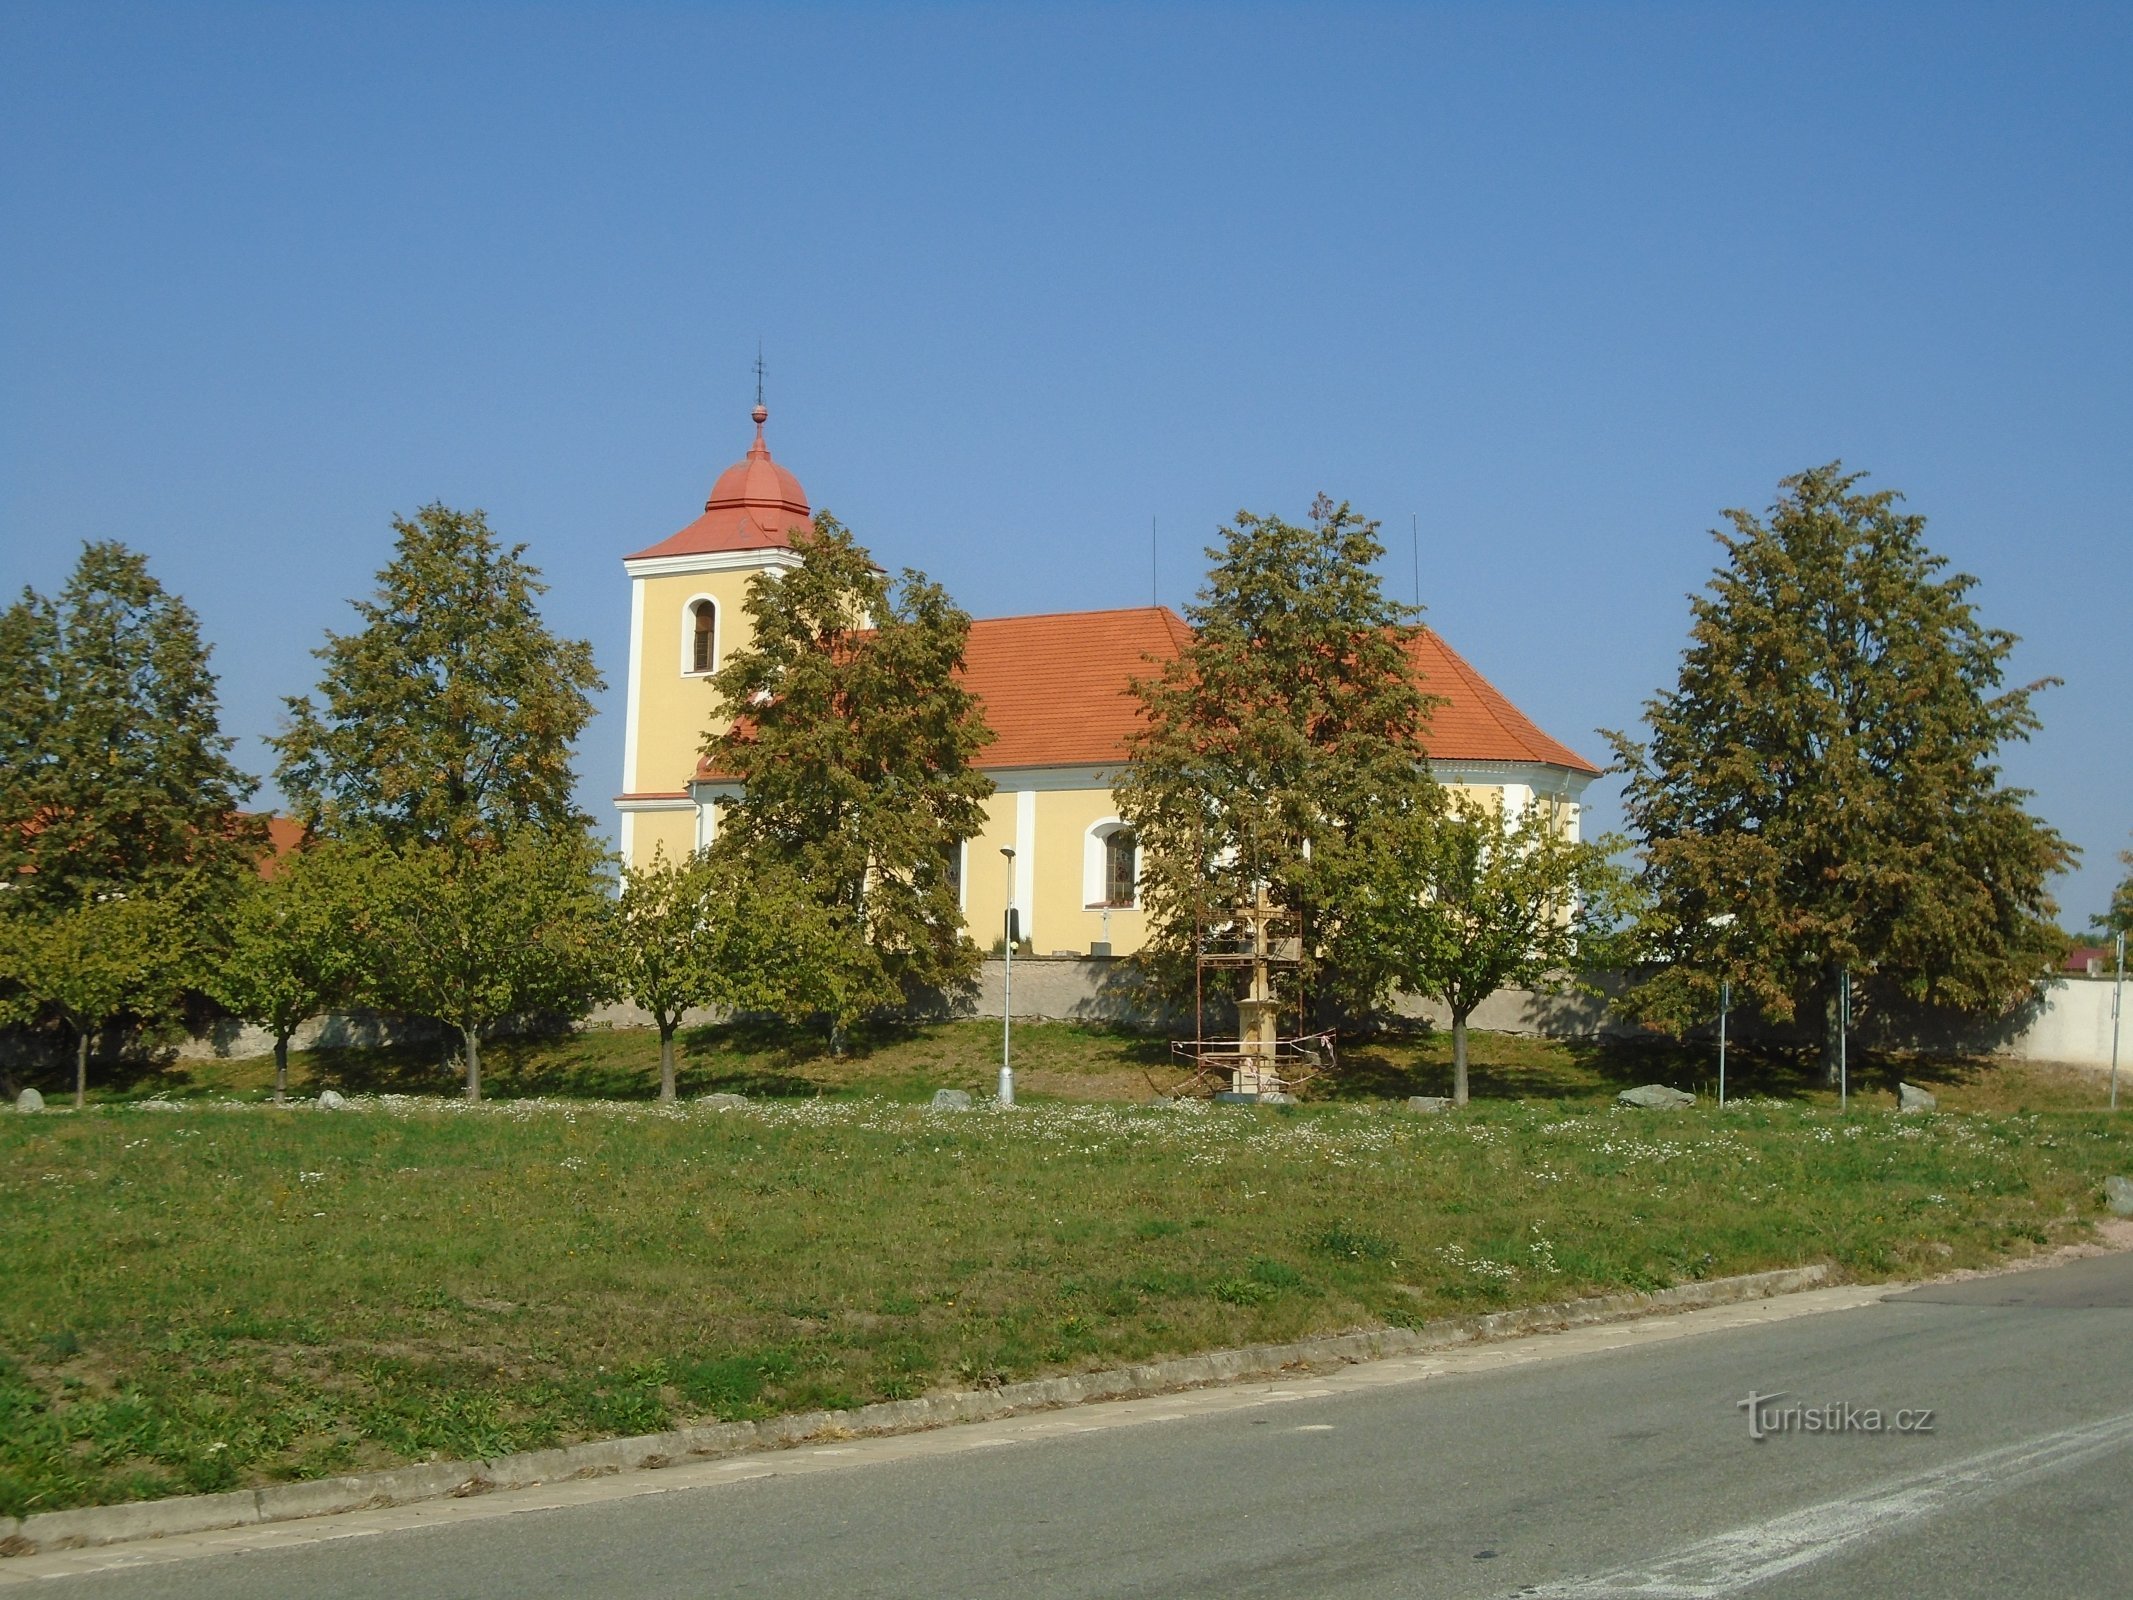 Церковь св. Йиржи (Бышть)